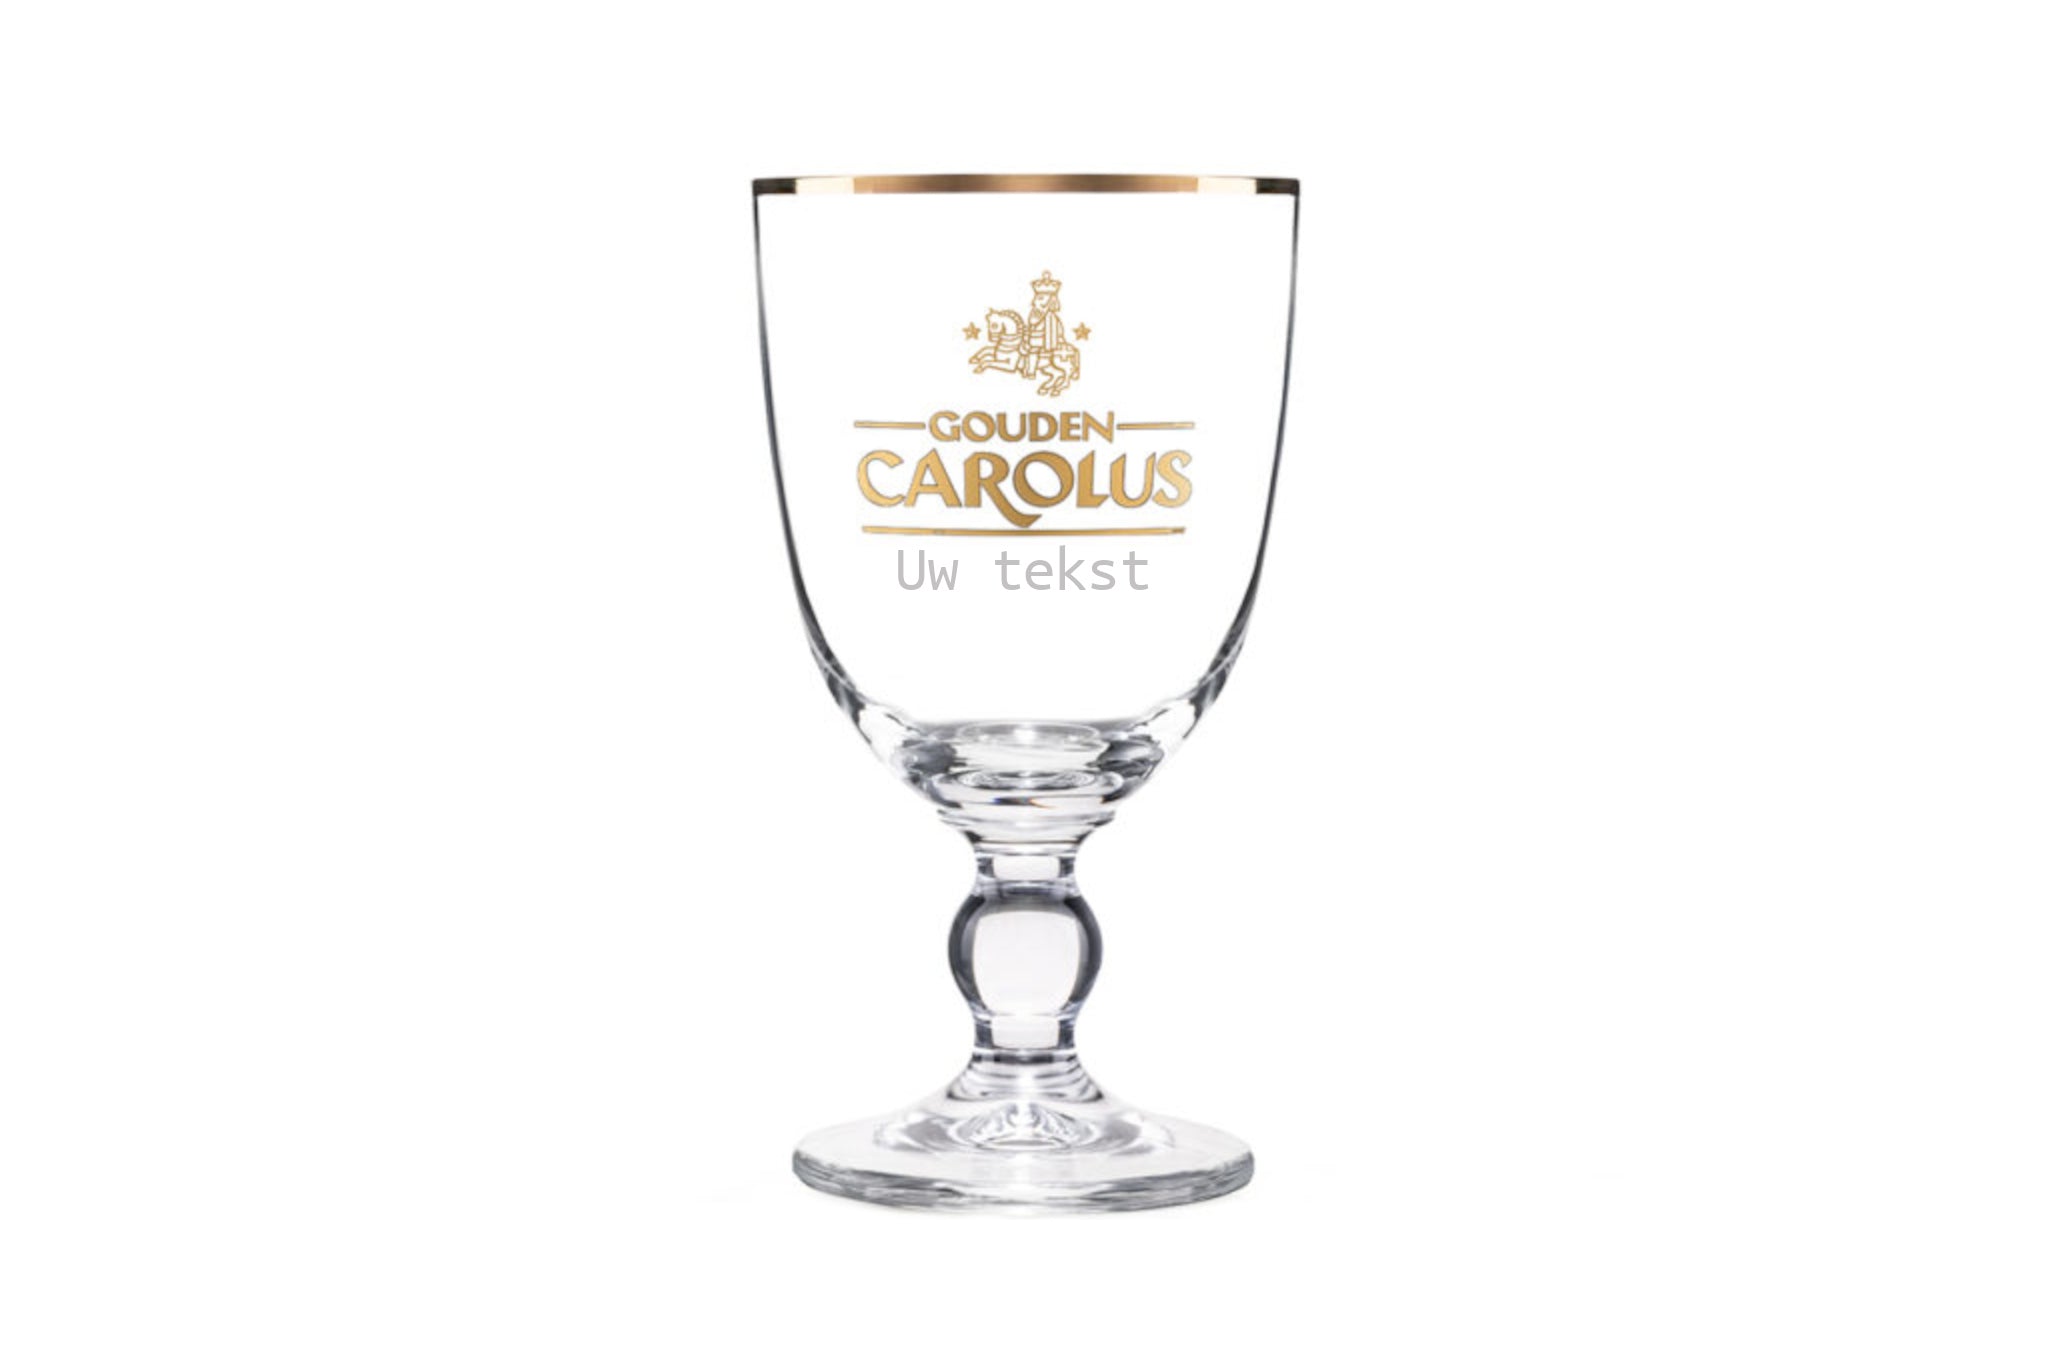 Gouden Carolus glas met tekst gegraveerd. Gepersonaliseerd Gouden Carolus glas. Tof cadeau voor Gouden Carolus liefhebber.